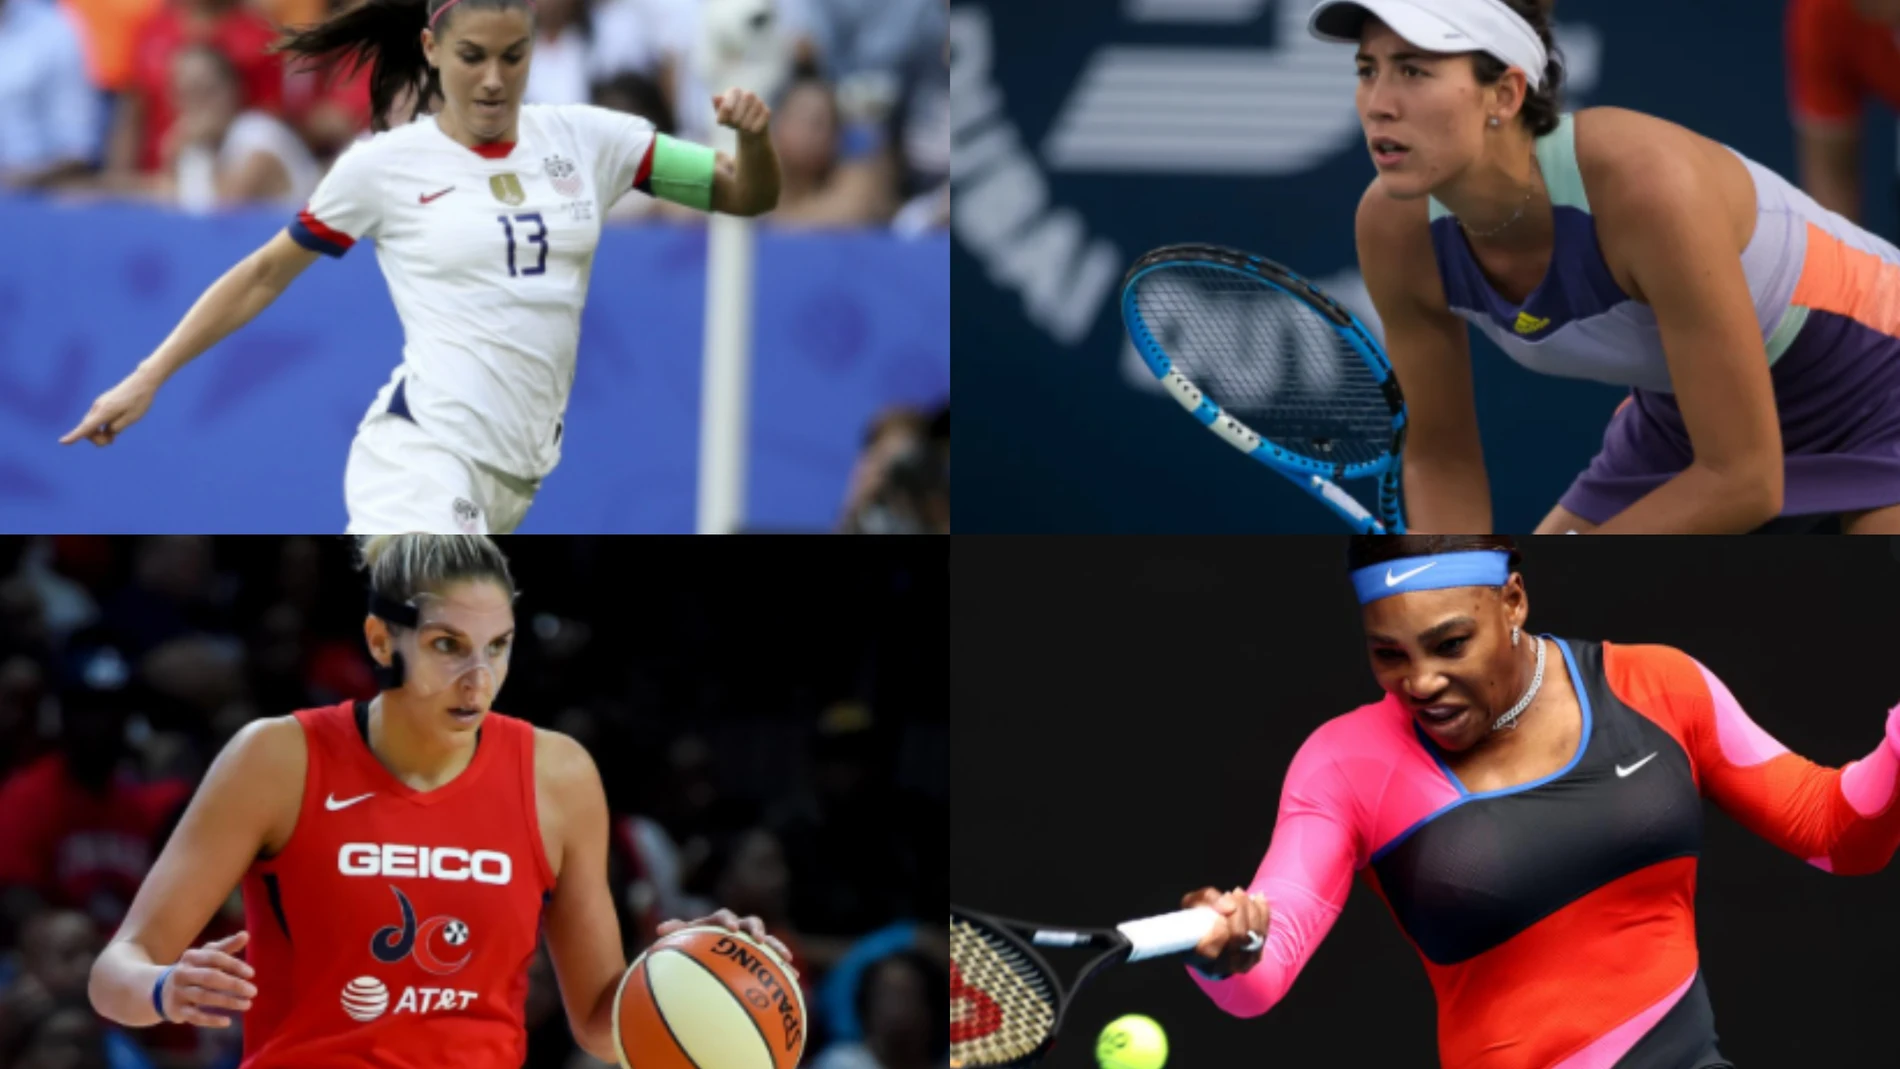 Mujeres deportistas: cuando la brecha salarial es un socavón